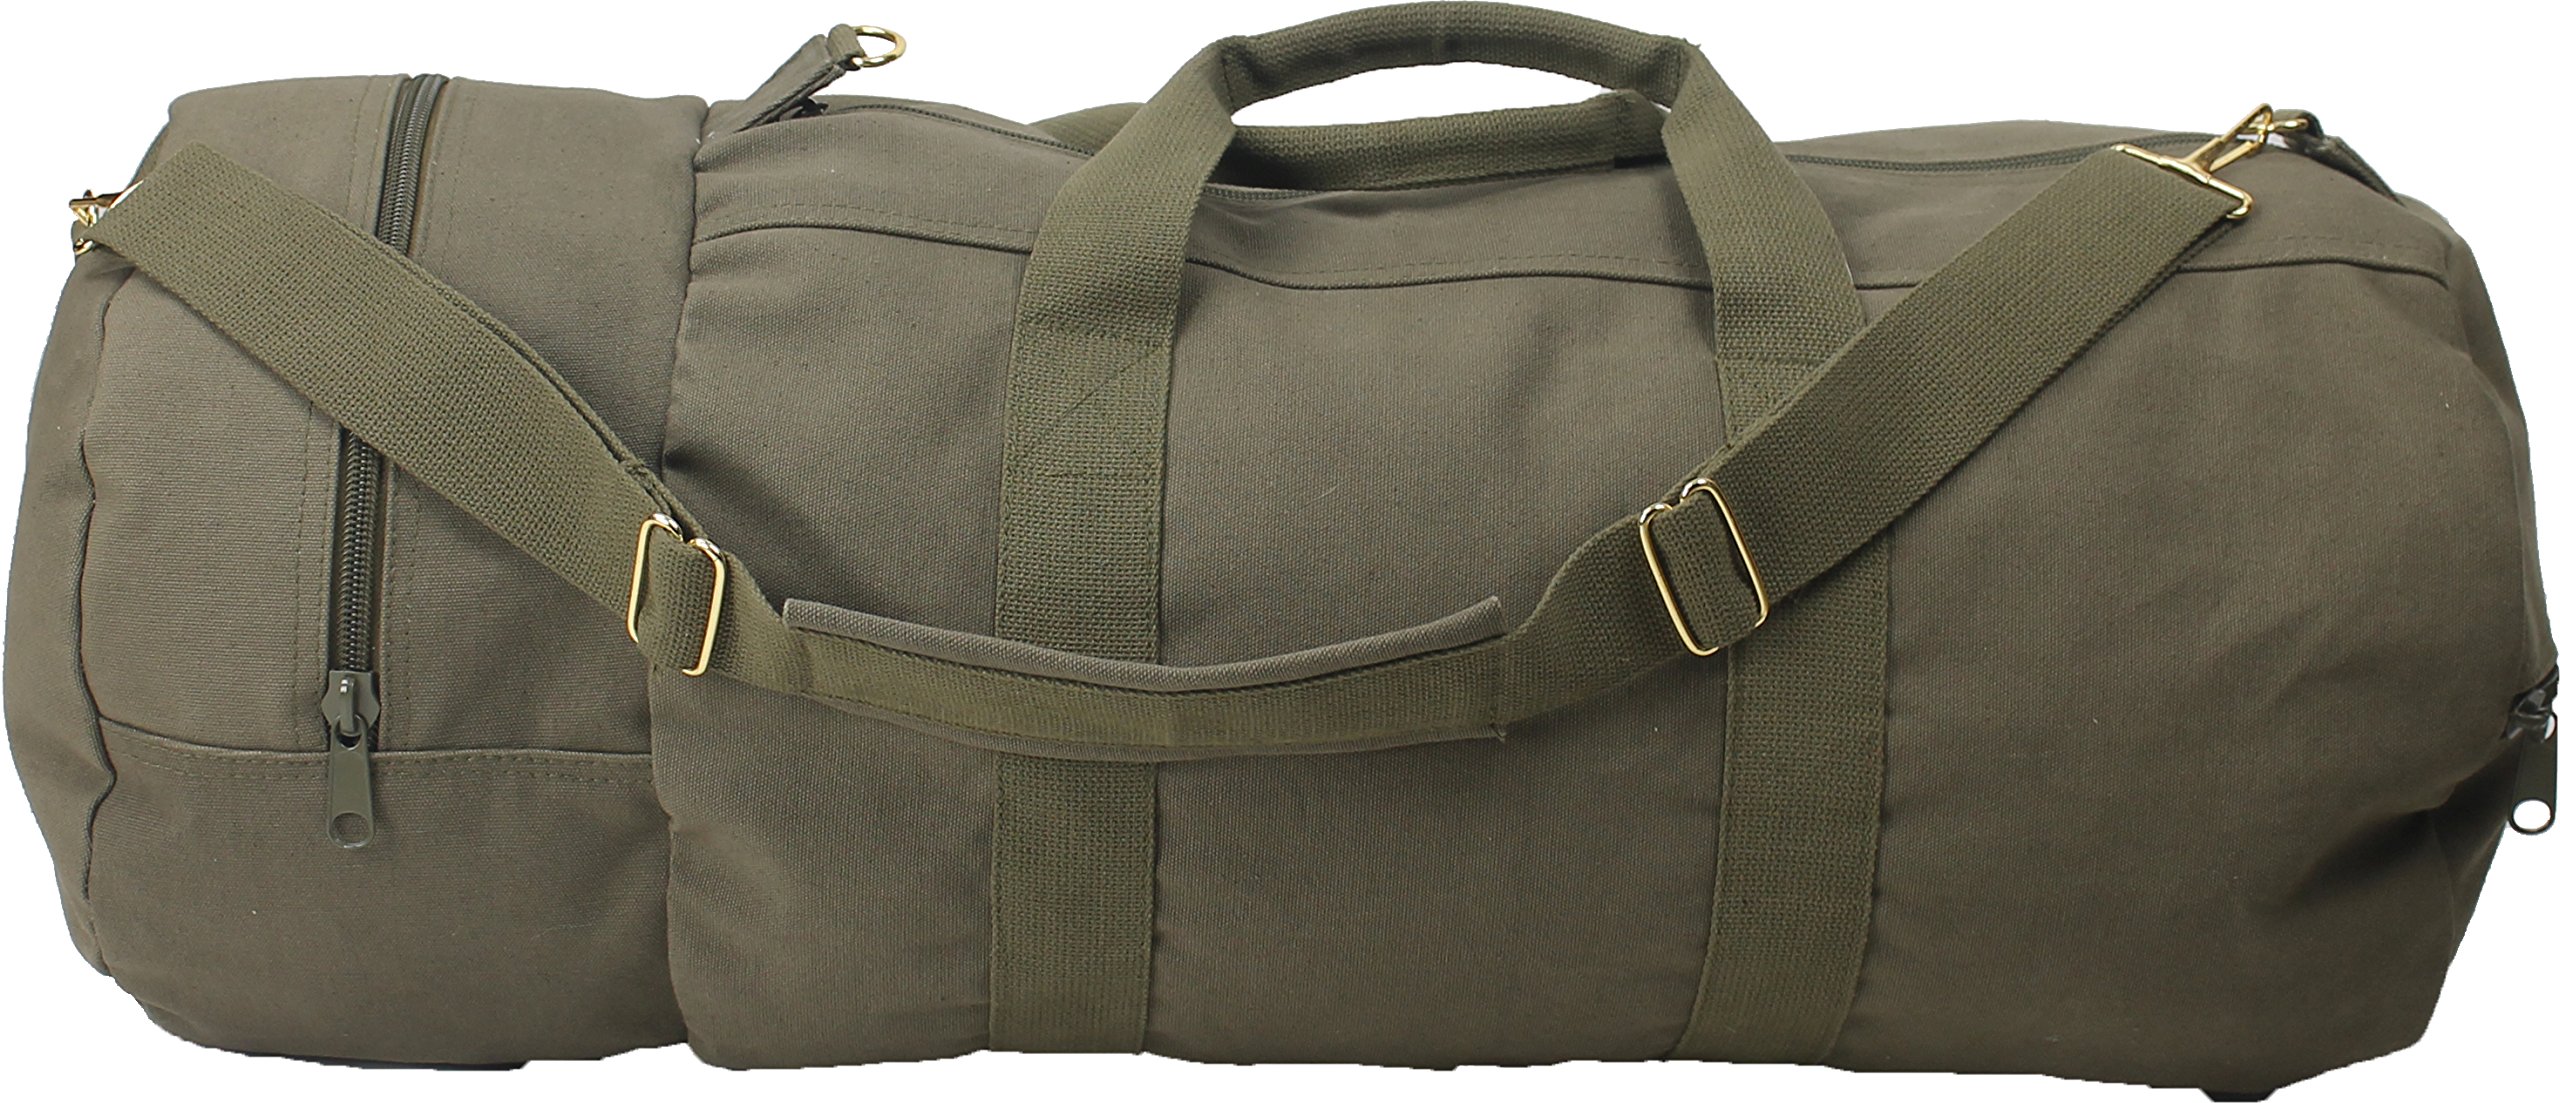 Monogrammed Weekender Duffel Bag for Sale at $101